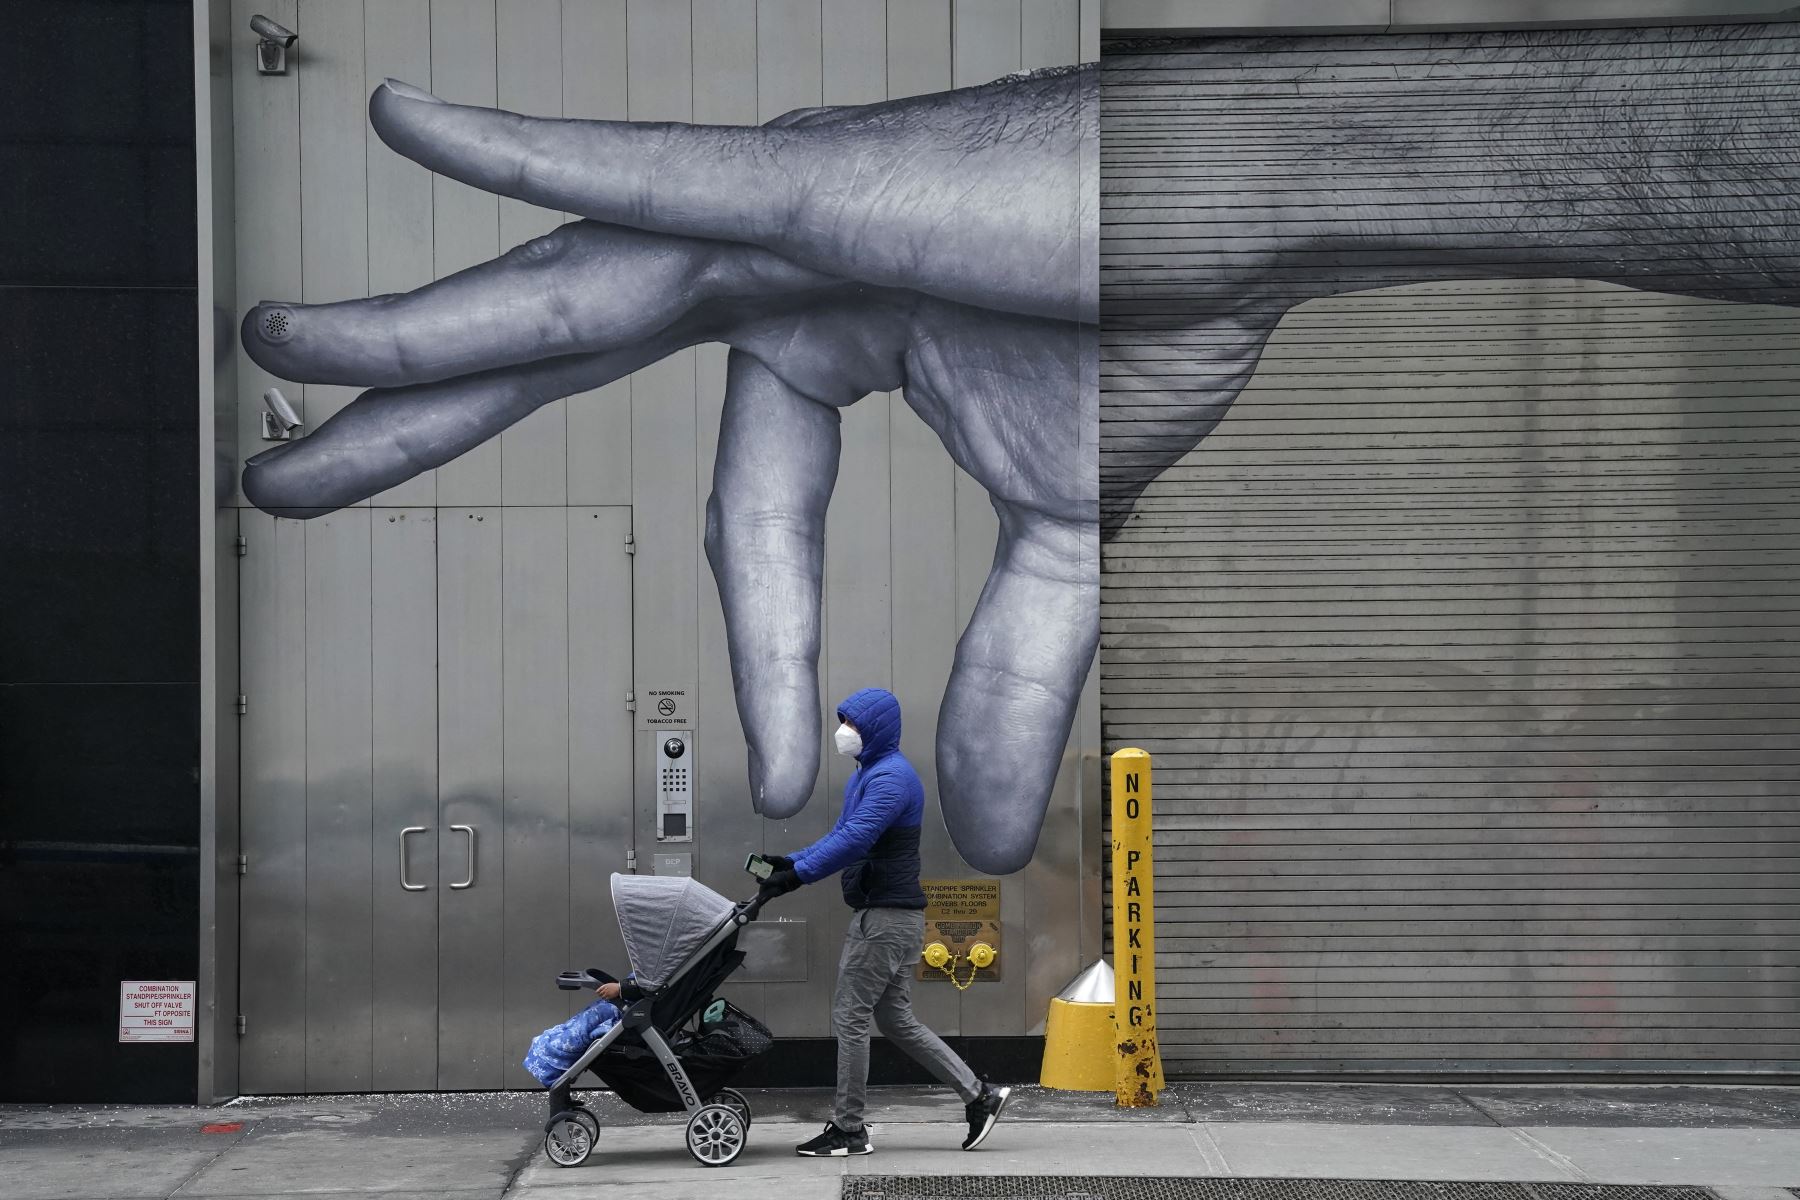 Una persona usa una mascarilla mientras empuja un cochecito de bebé frente a un mural de una mano en el muelle de carga en el Upper East Side de la ciudad de Nueva York. Foto: AFP